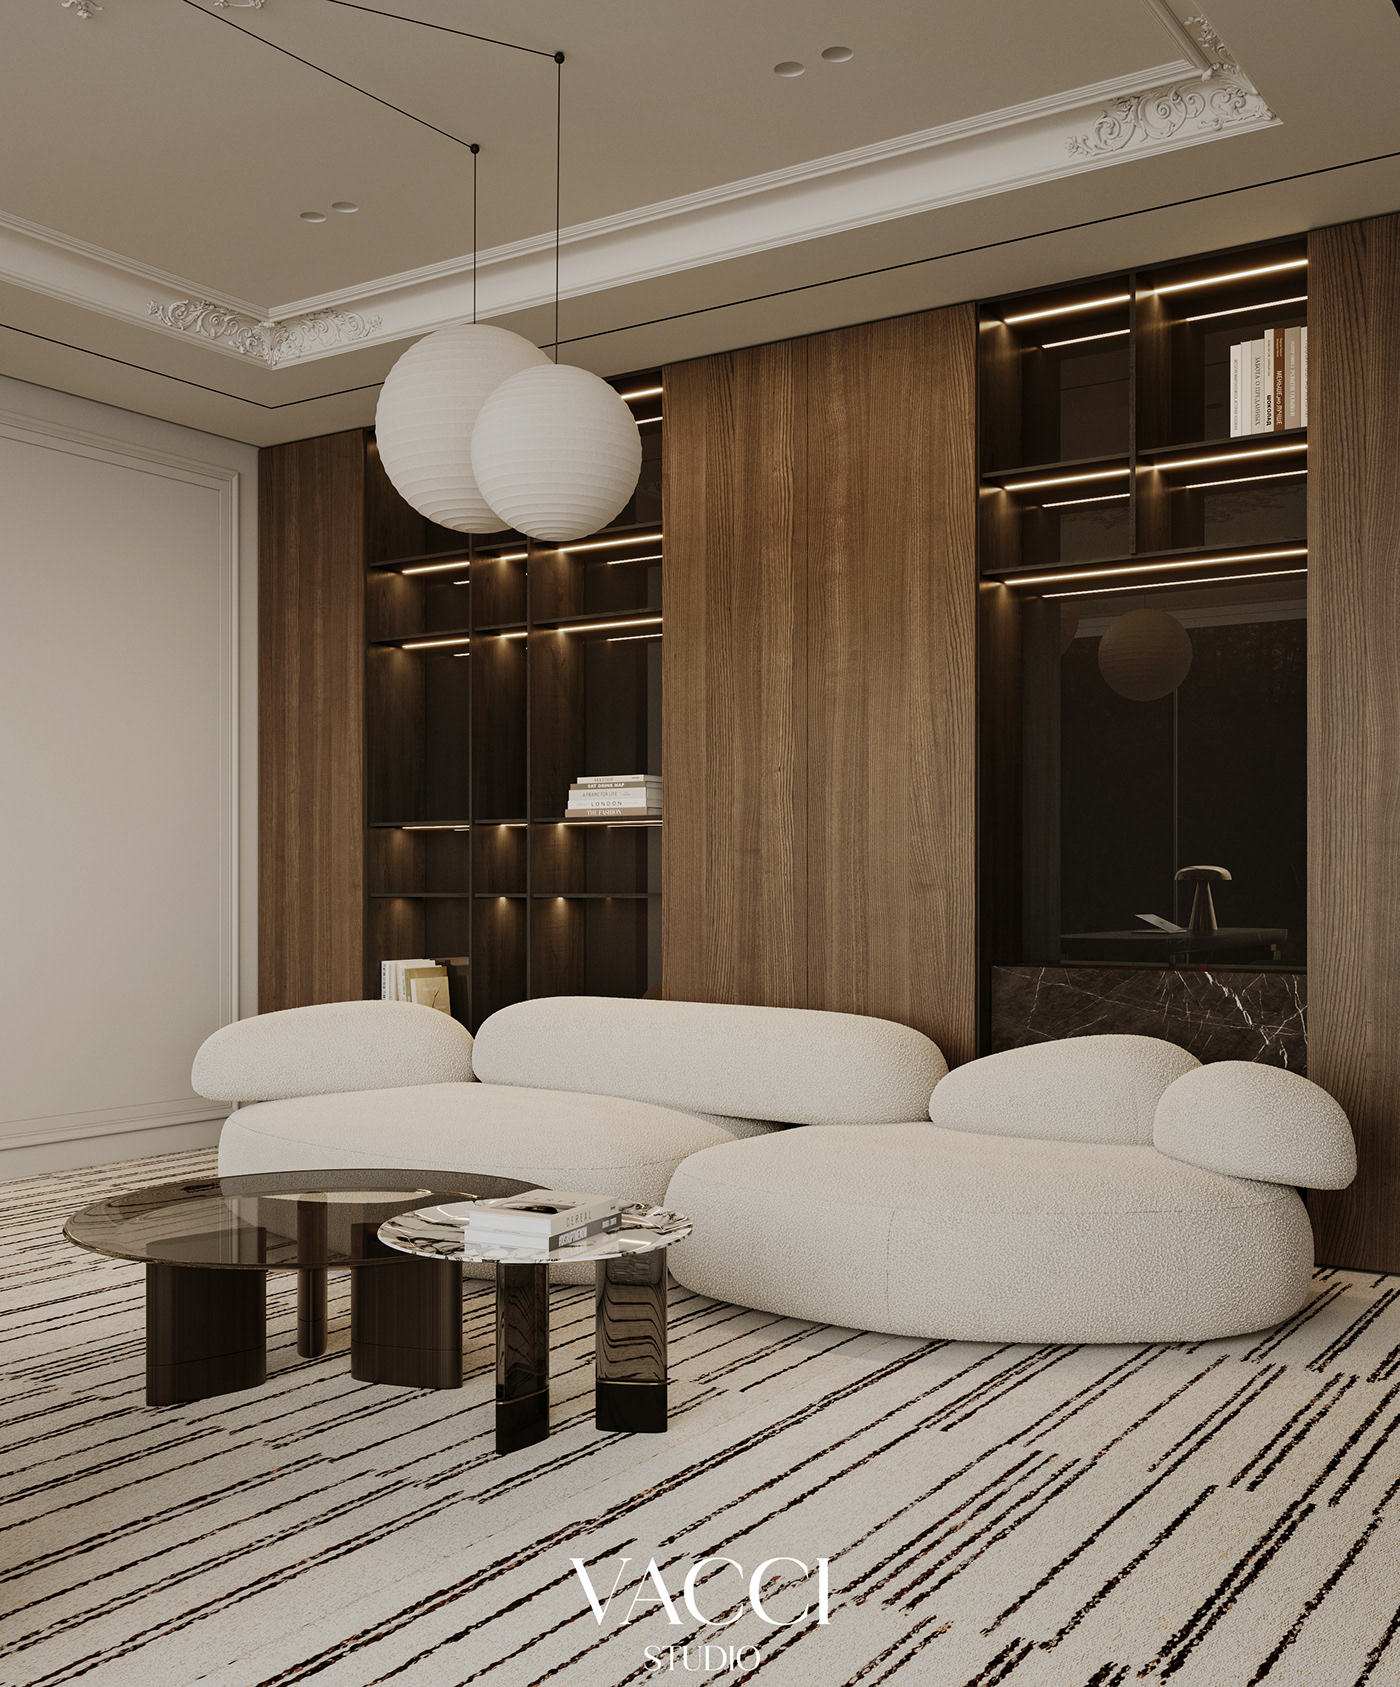 interior design  visualization archviz modern modern interior design 3ds max CGI corona Render architecture